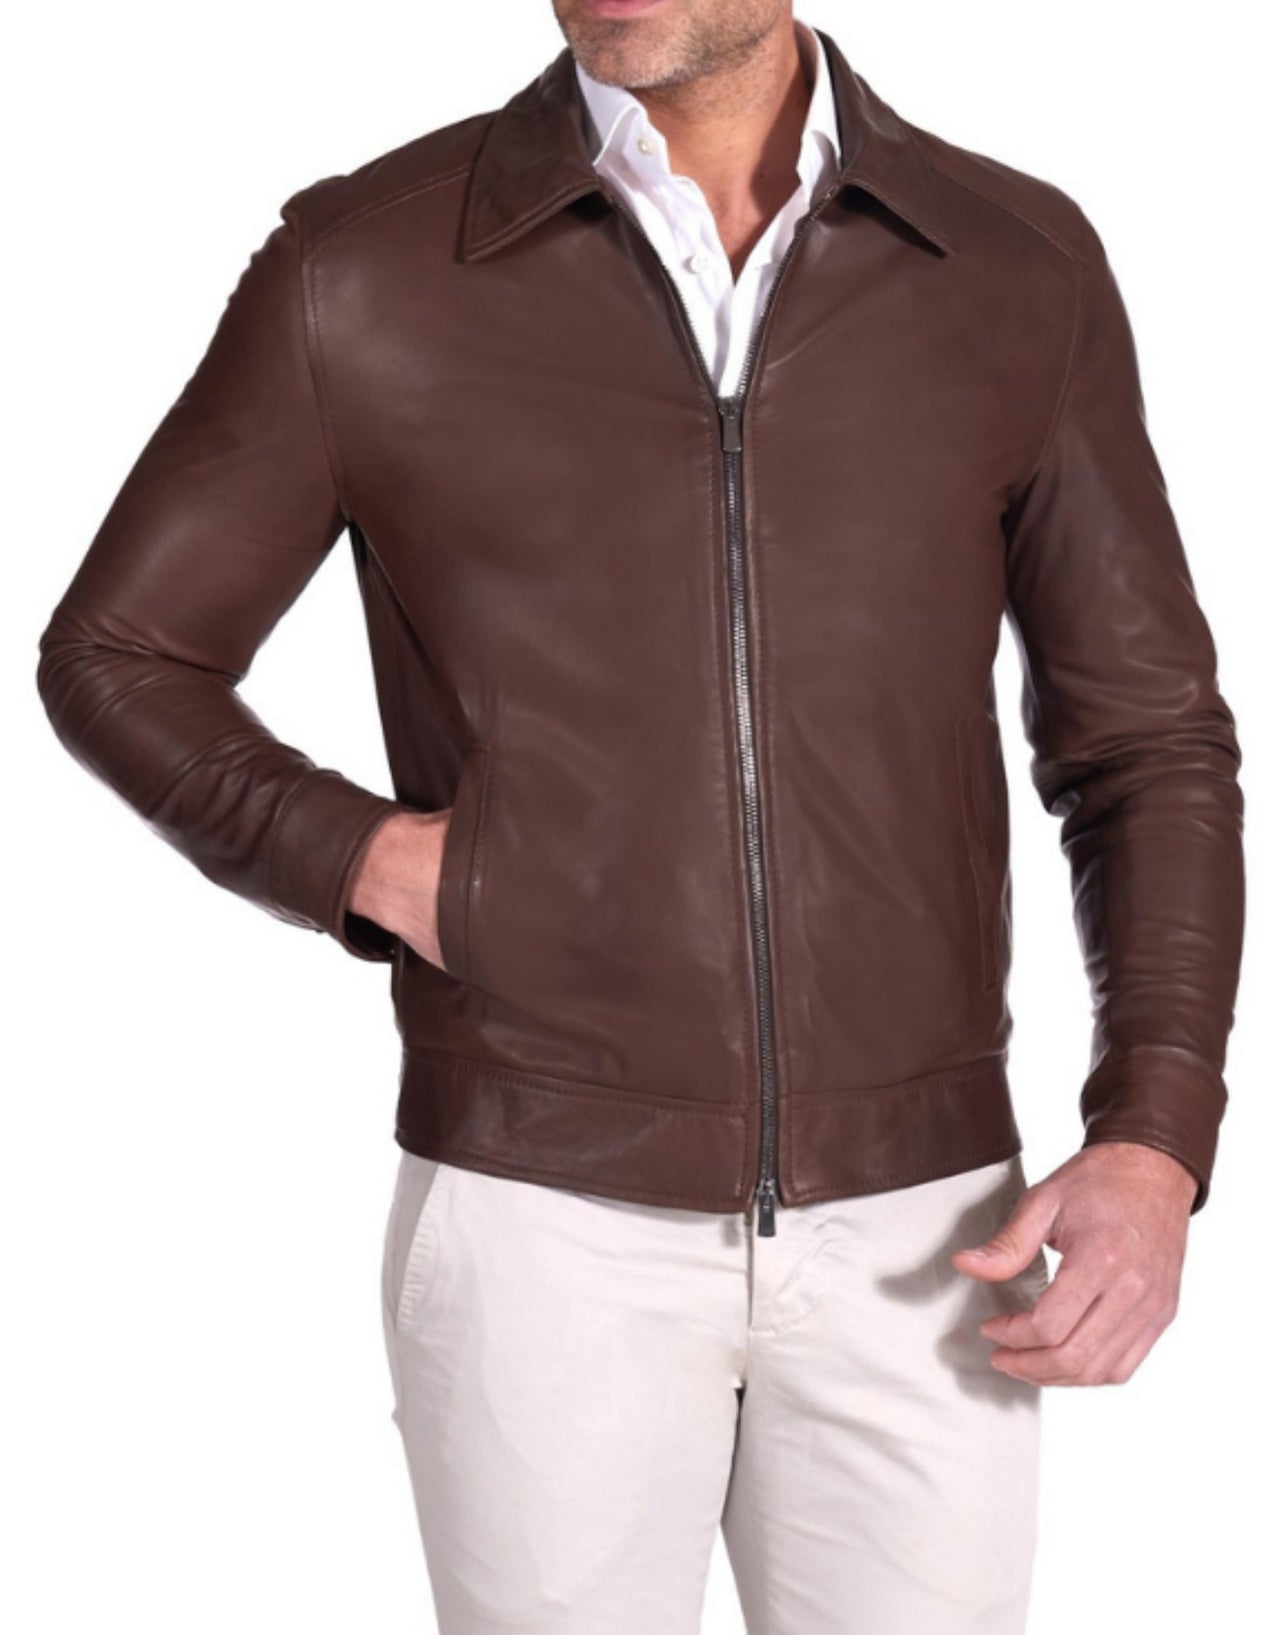 MCKINNON Shirt Collar Leather Jacket DARK BROWN